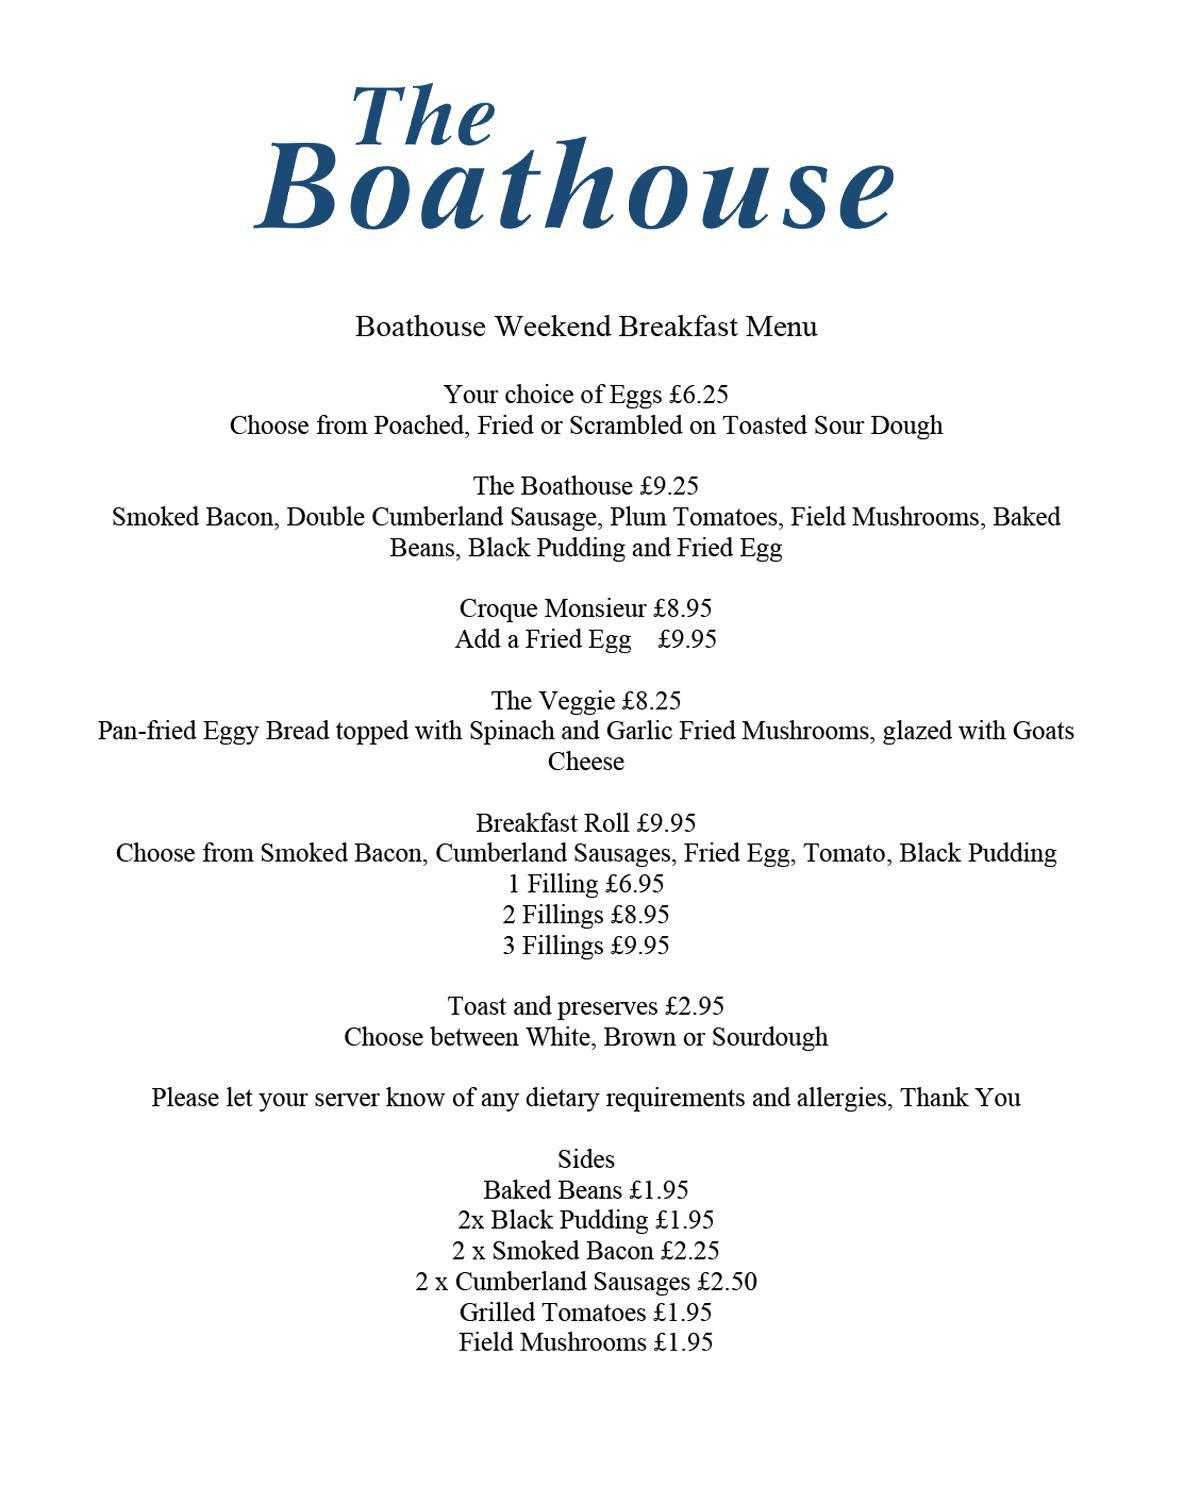 The Boathouse Weekend Breakfast Menu